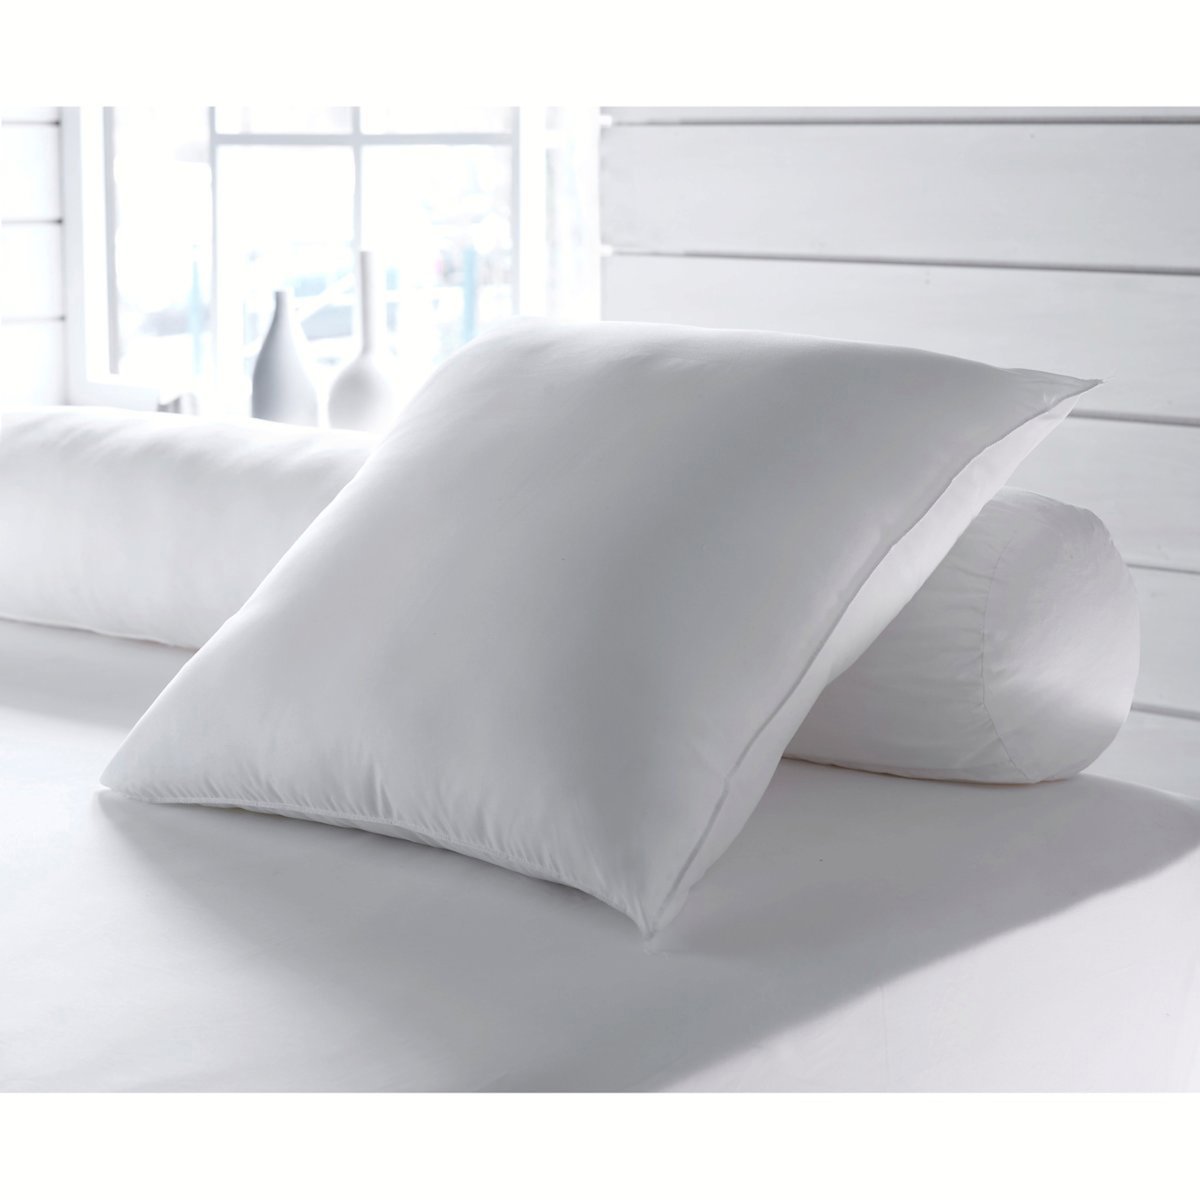 Одеяло La Redoute Экологичное синтетическое с обработкой против клещей Proneem стандартное качество 260 x 240 см белый, размер 260 x 240 см - фото 2